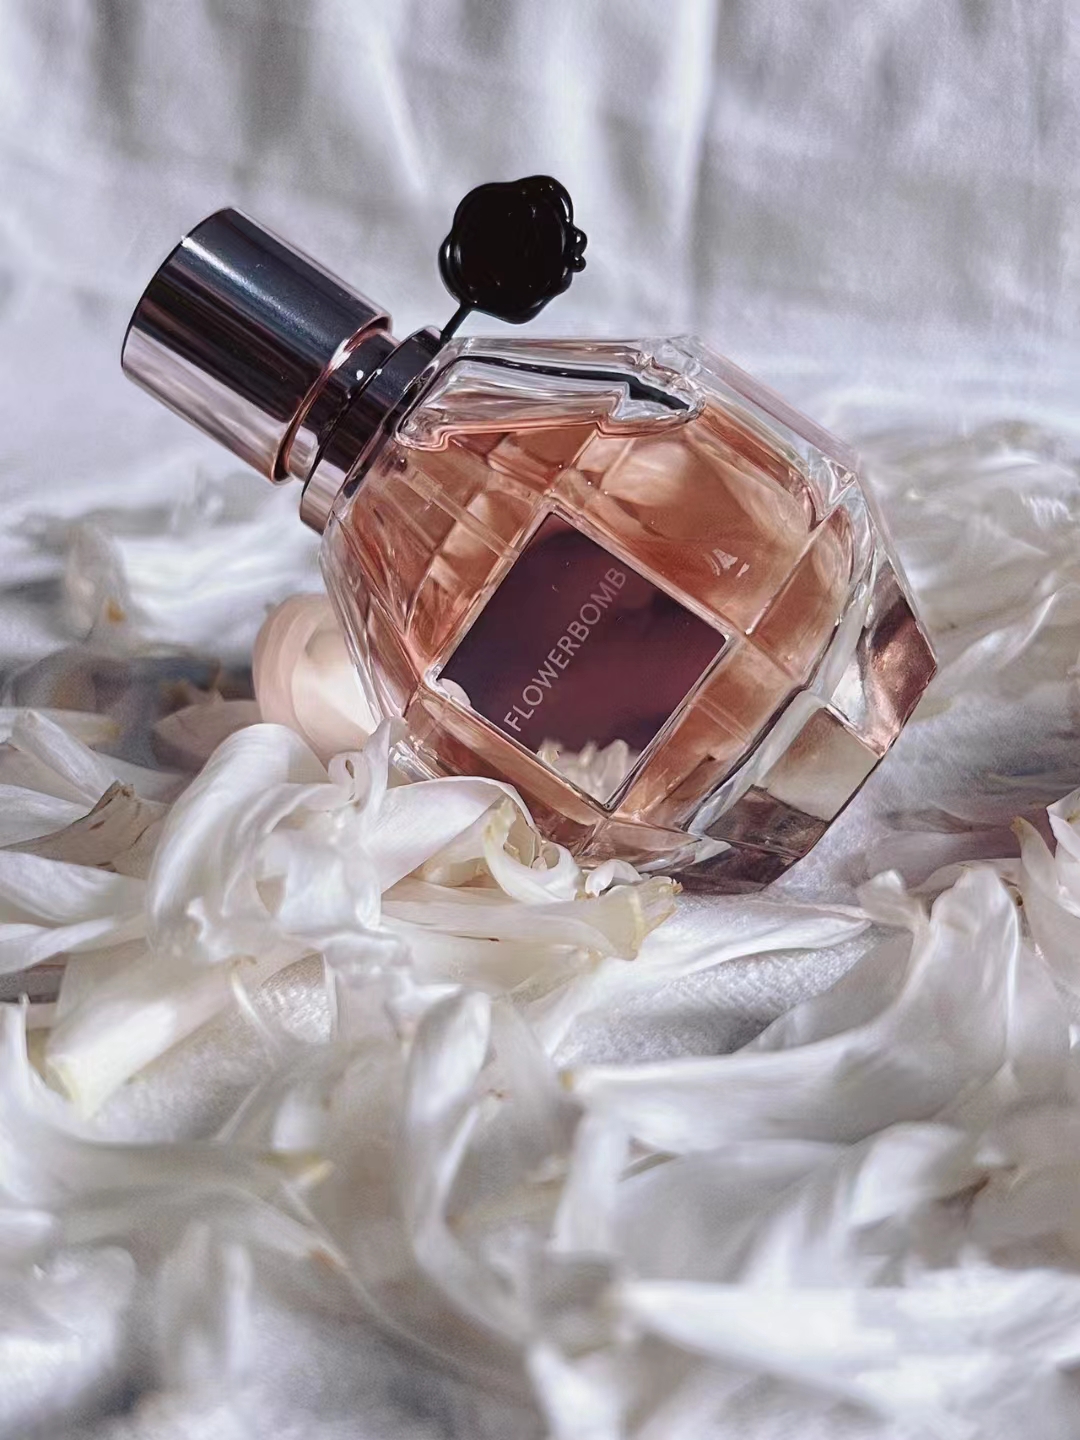 Воздух освежитель женский парфюм цветочный бум духи 100 мл для женщин Eau de parfum спреем топ -версия качество длительного аромата запаха быстрое корабль